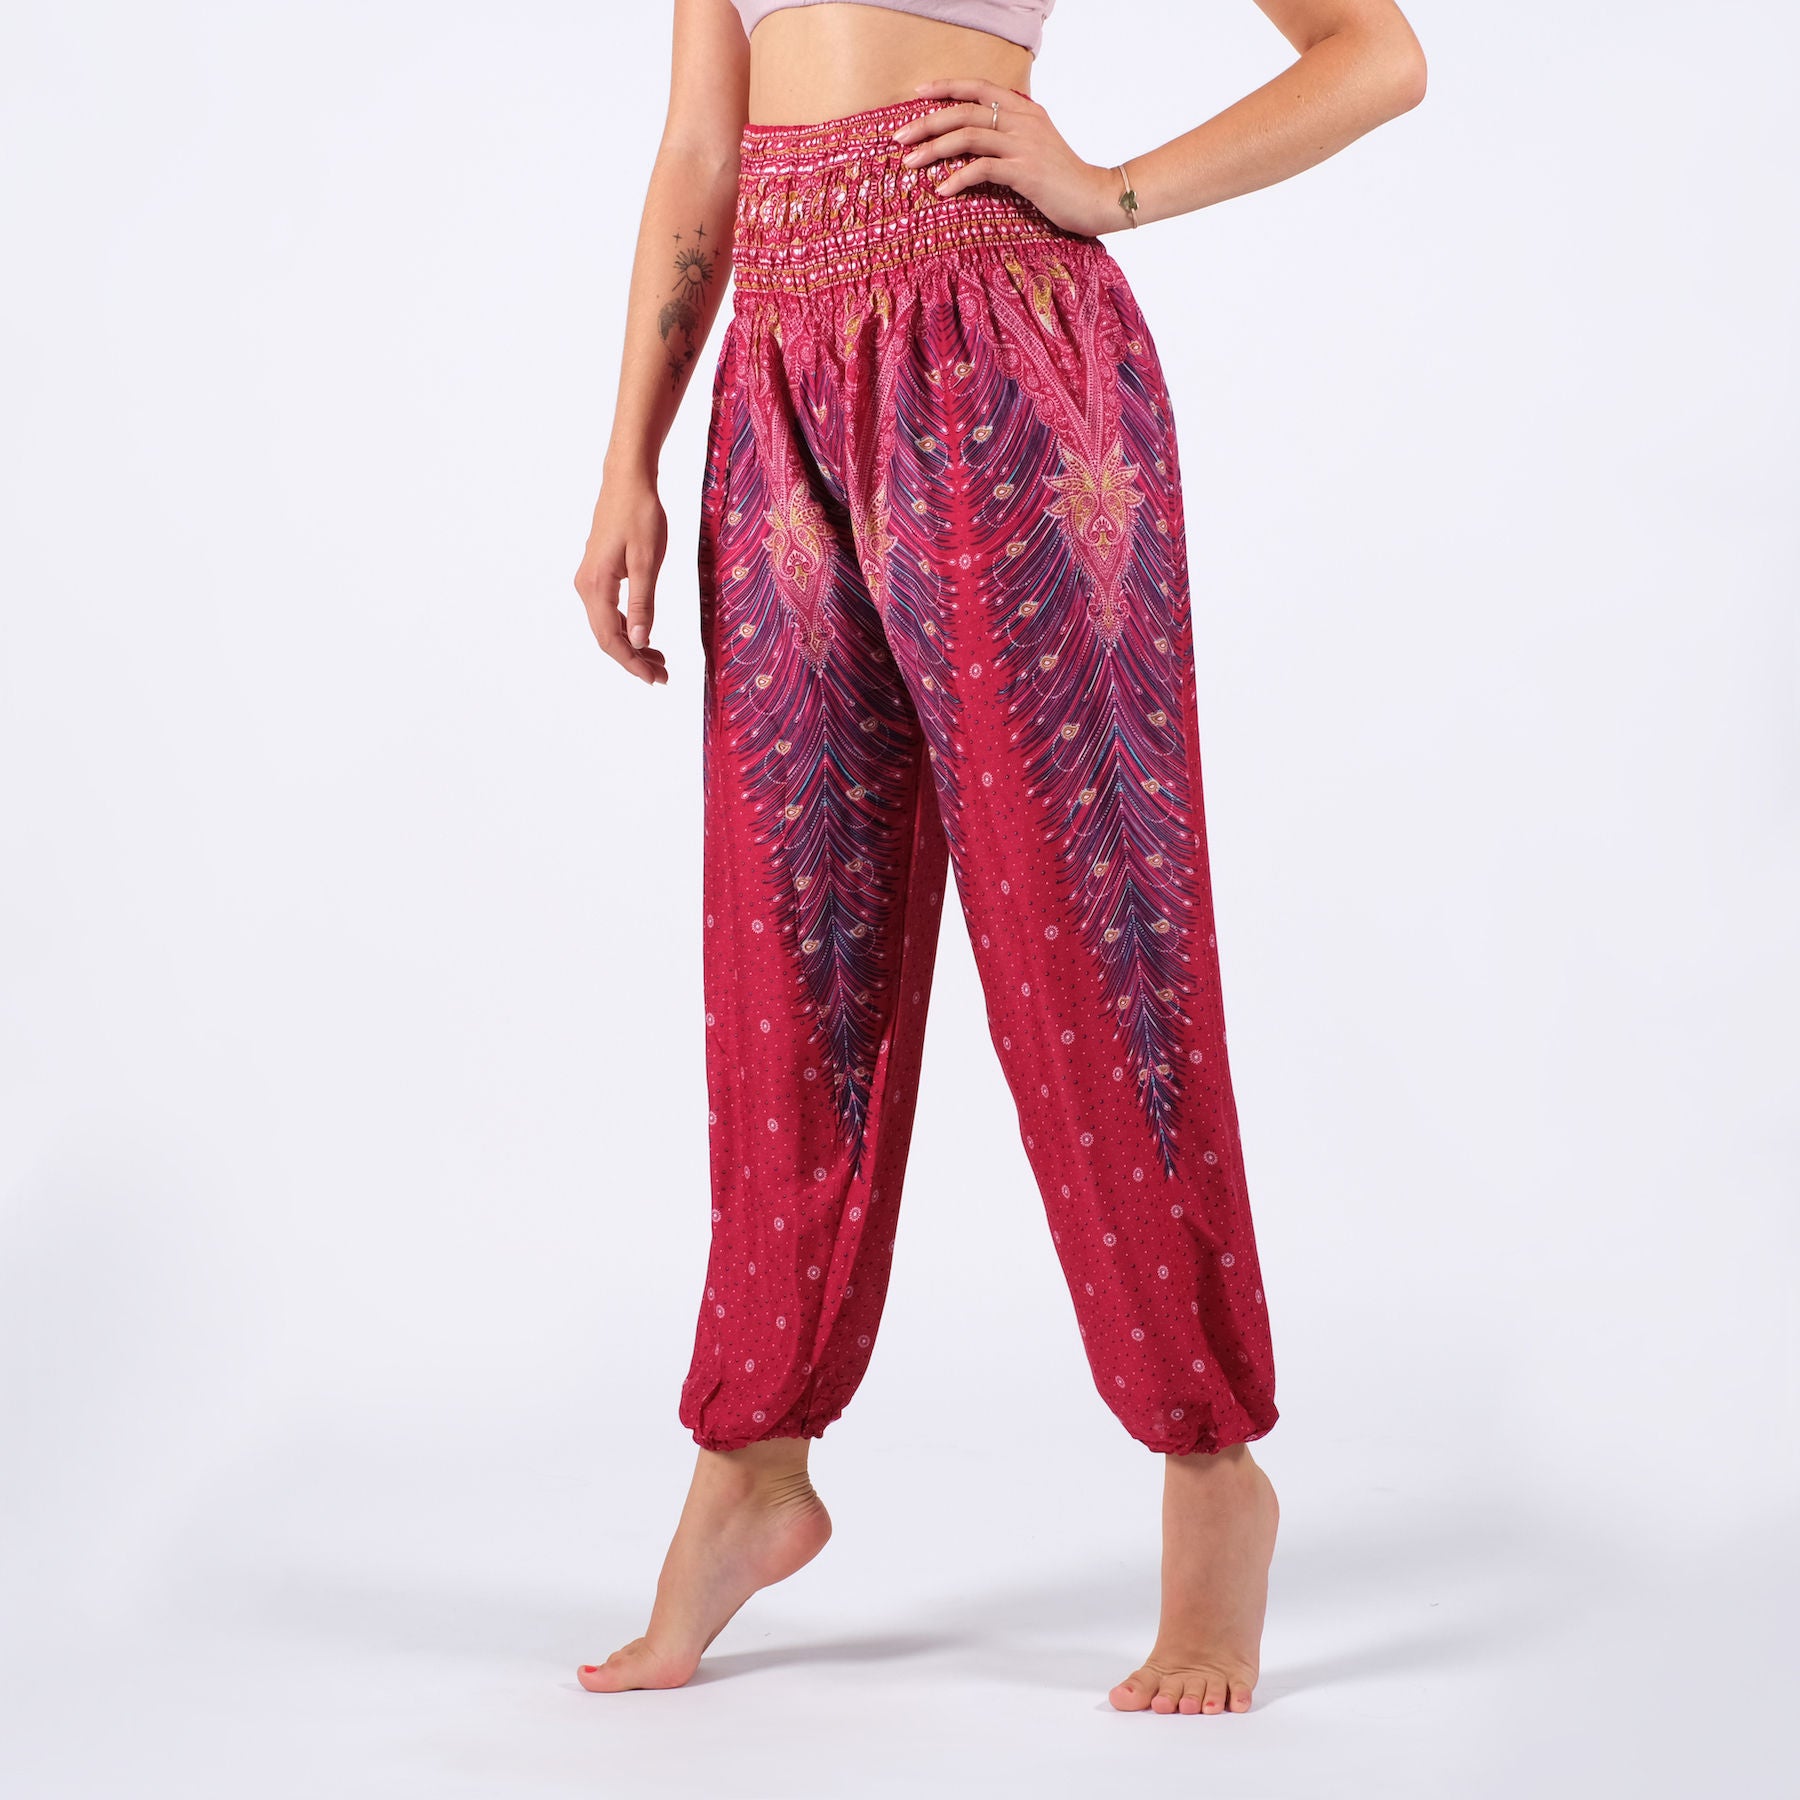 Pantaloni harem yoga rosso piuma